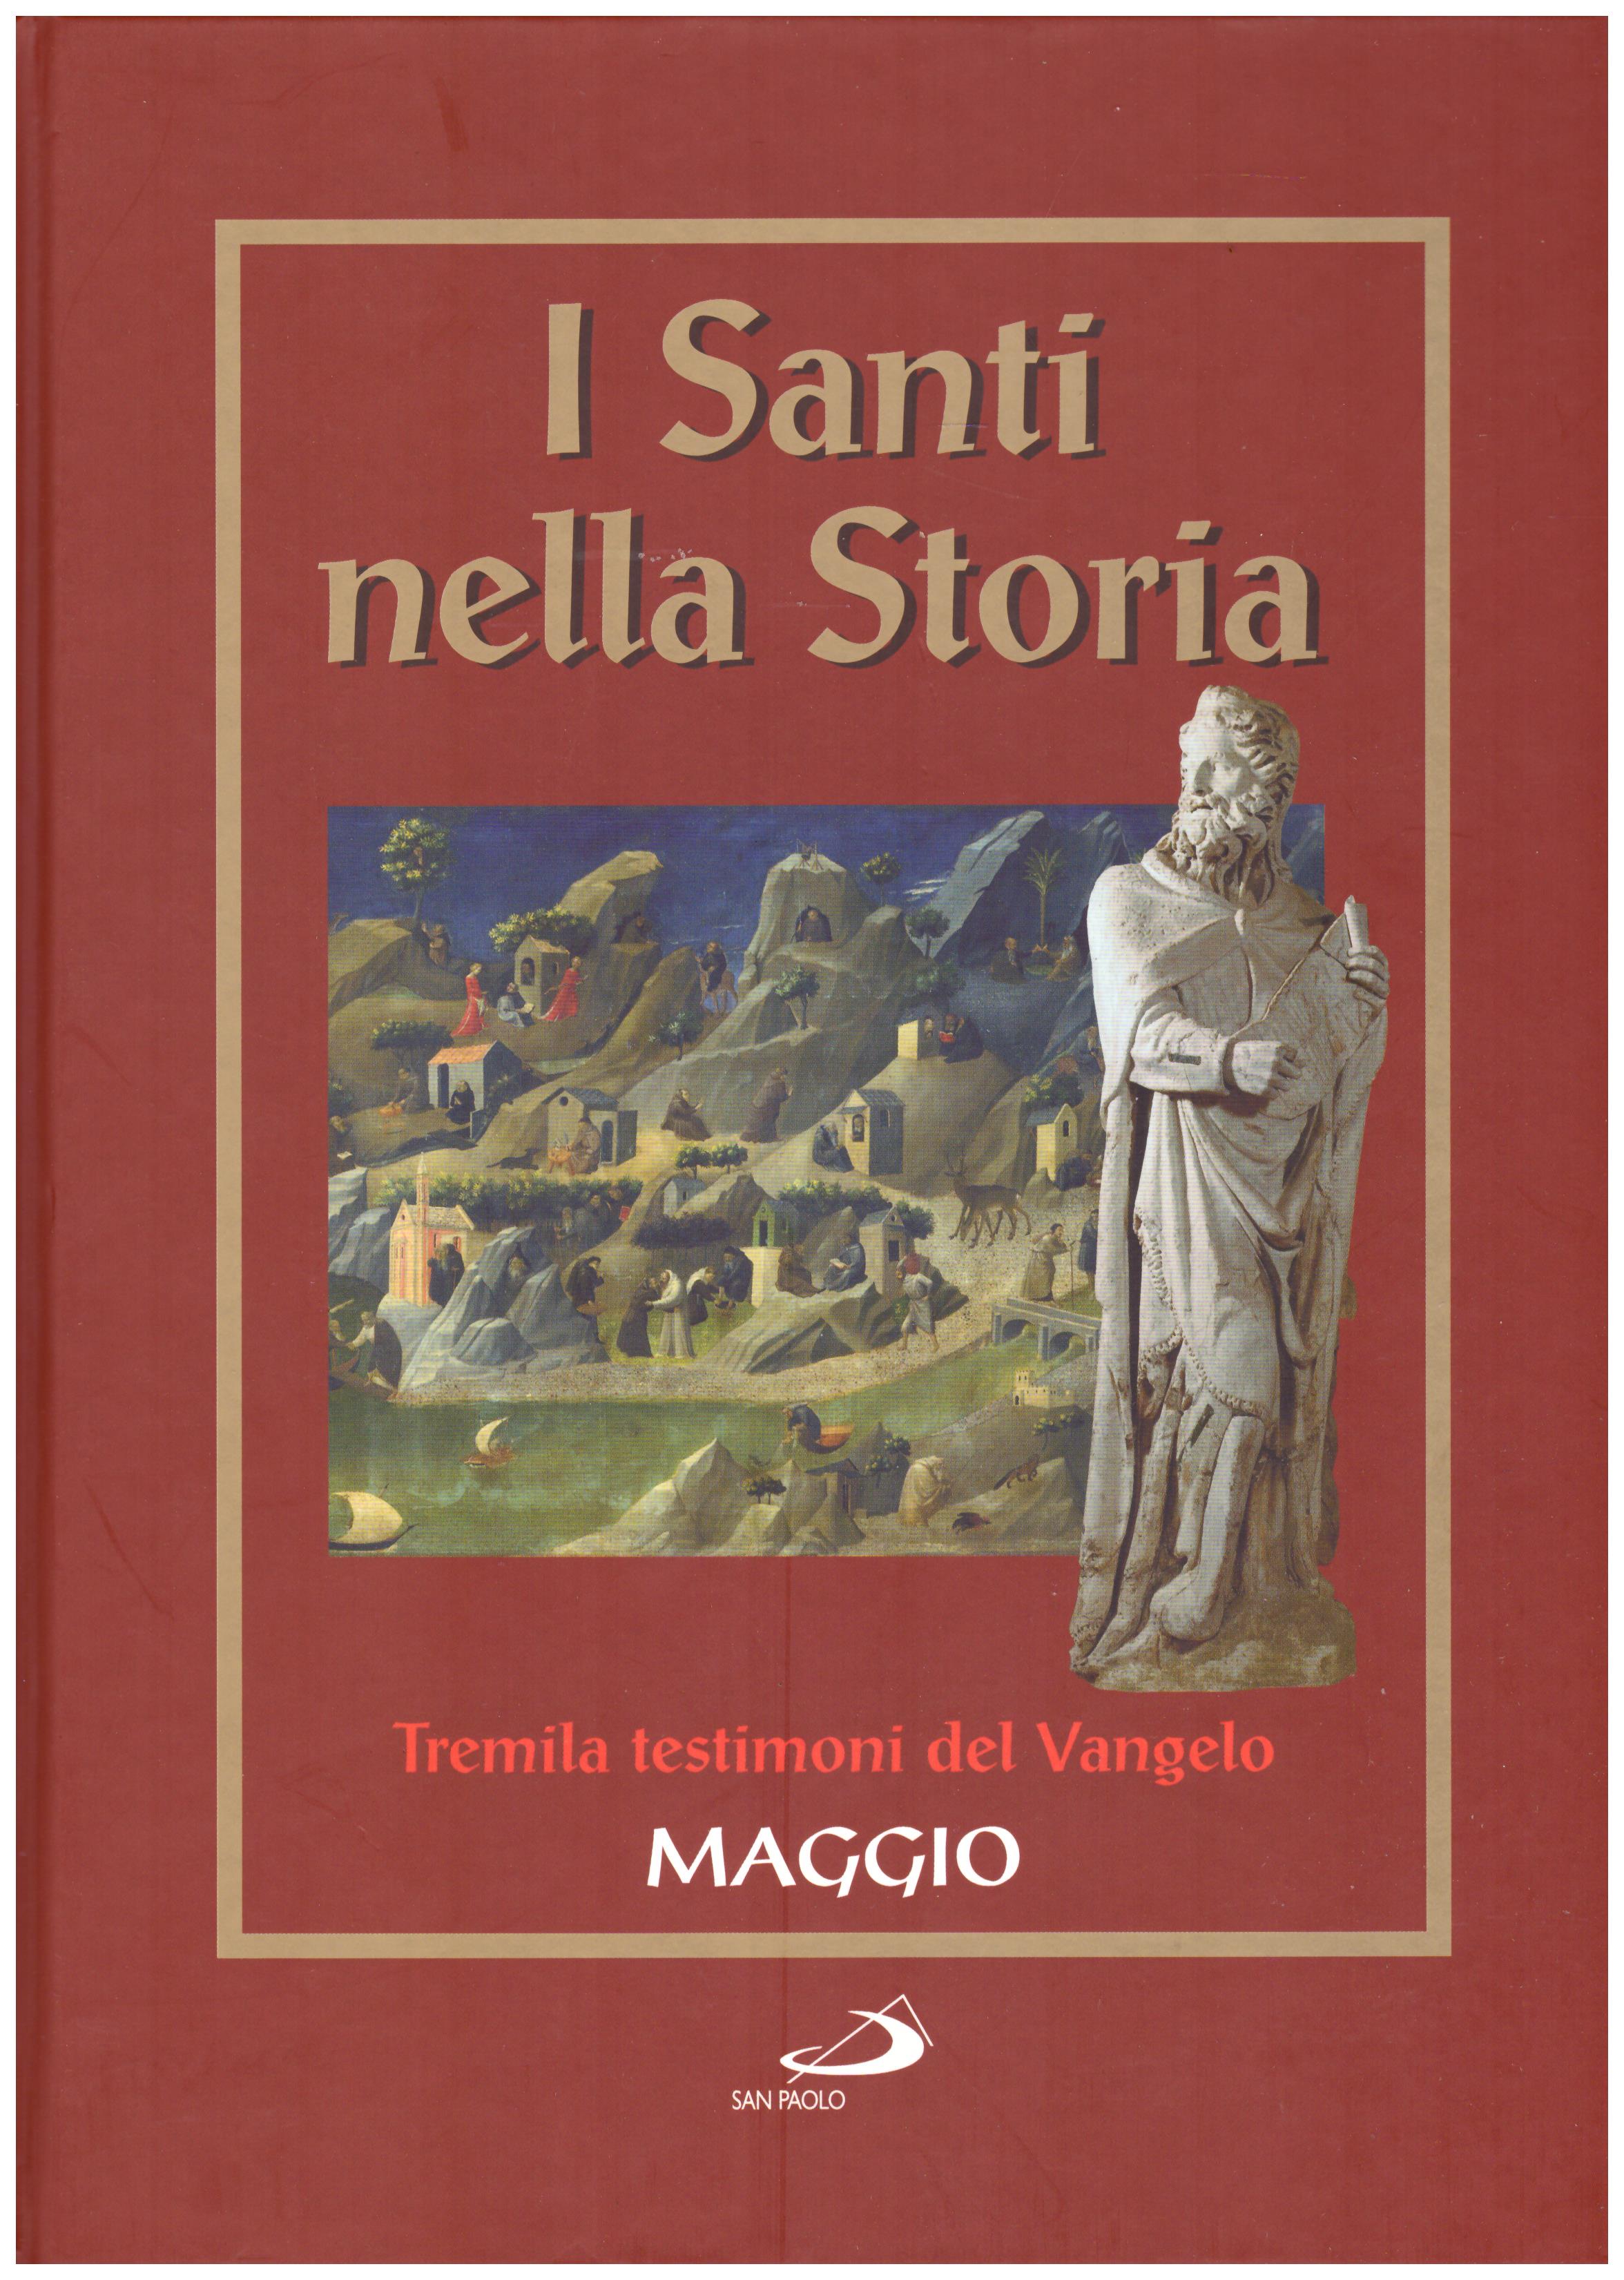 Titolo: I santi nella storia, tremila testimoni del Vangelo, Maggio Autore : AA.VV.   Editore: San Paolo 2006